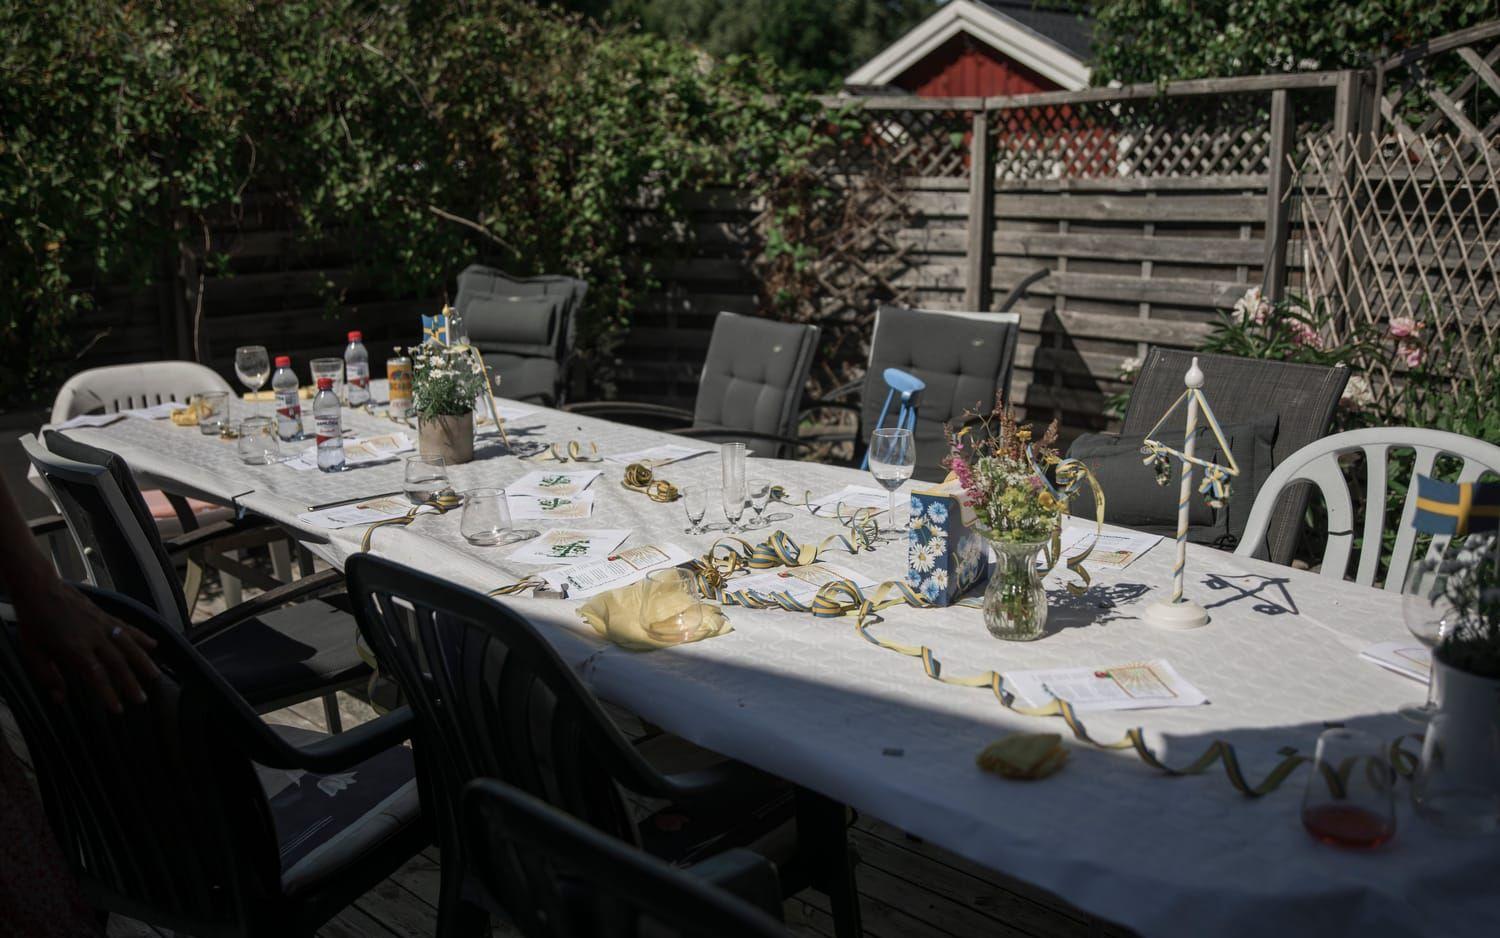 På bordet står blomstervaser, Sverigeflaggor och halvdruckna snapsglas. Här har sällskapet på 19 personer precis avnjutit en midsommarlunch med en twist.